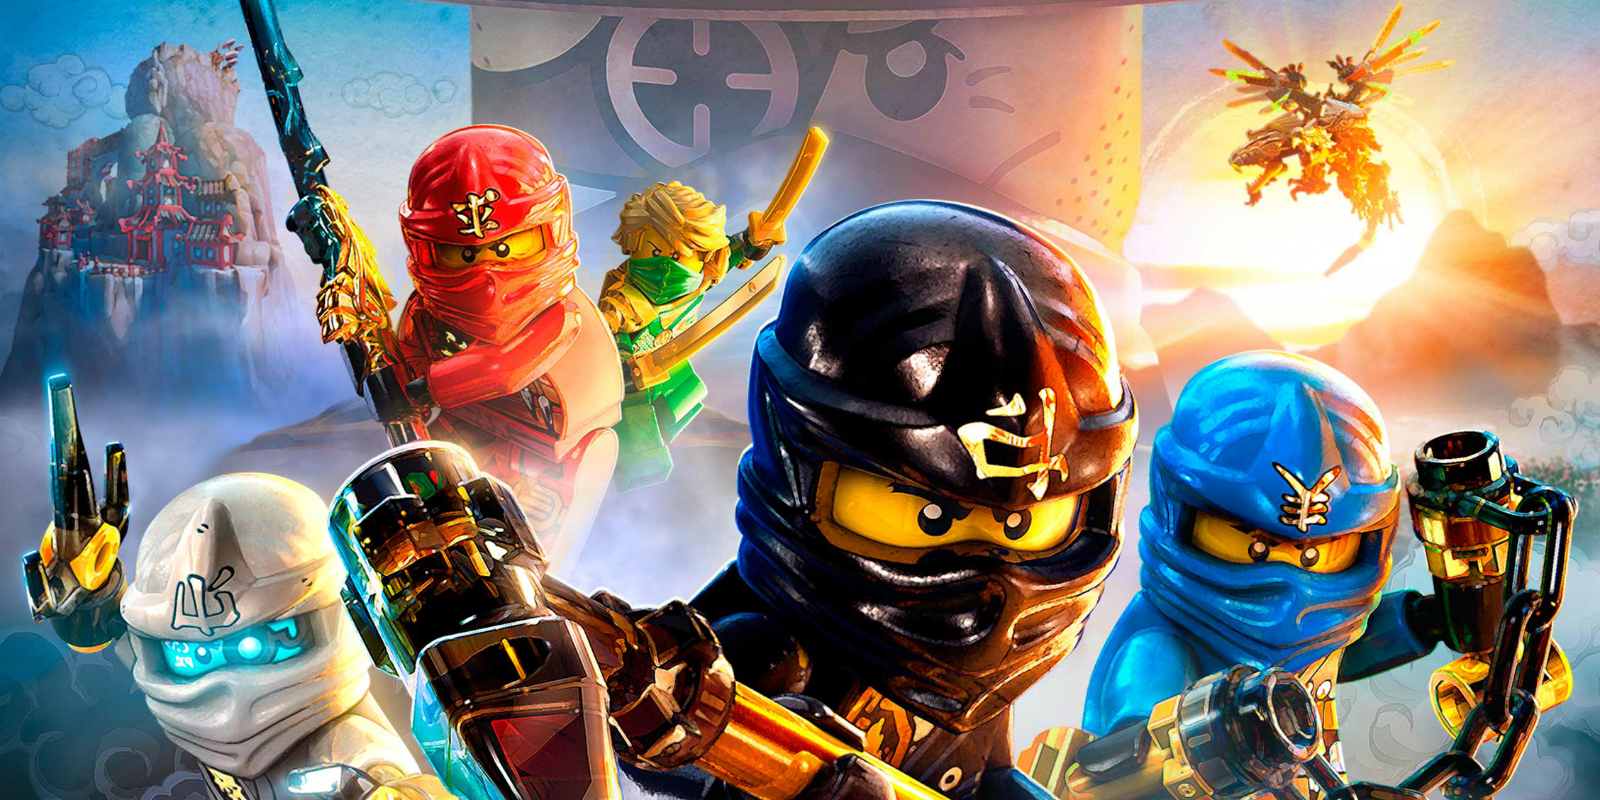 Ulempe Bliver værre Installation First Trailer For The LEGO Ninjago Movie Kicks Up Some Ninja Action |  Digital Trends